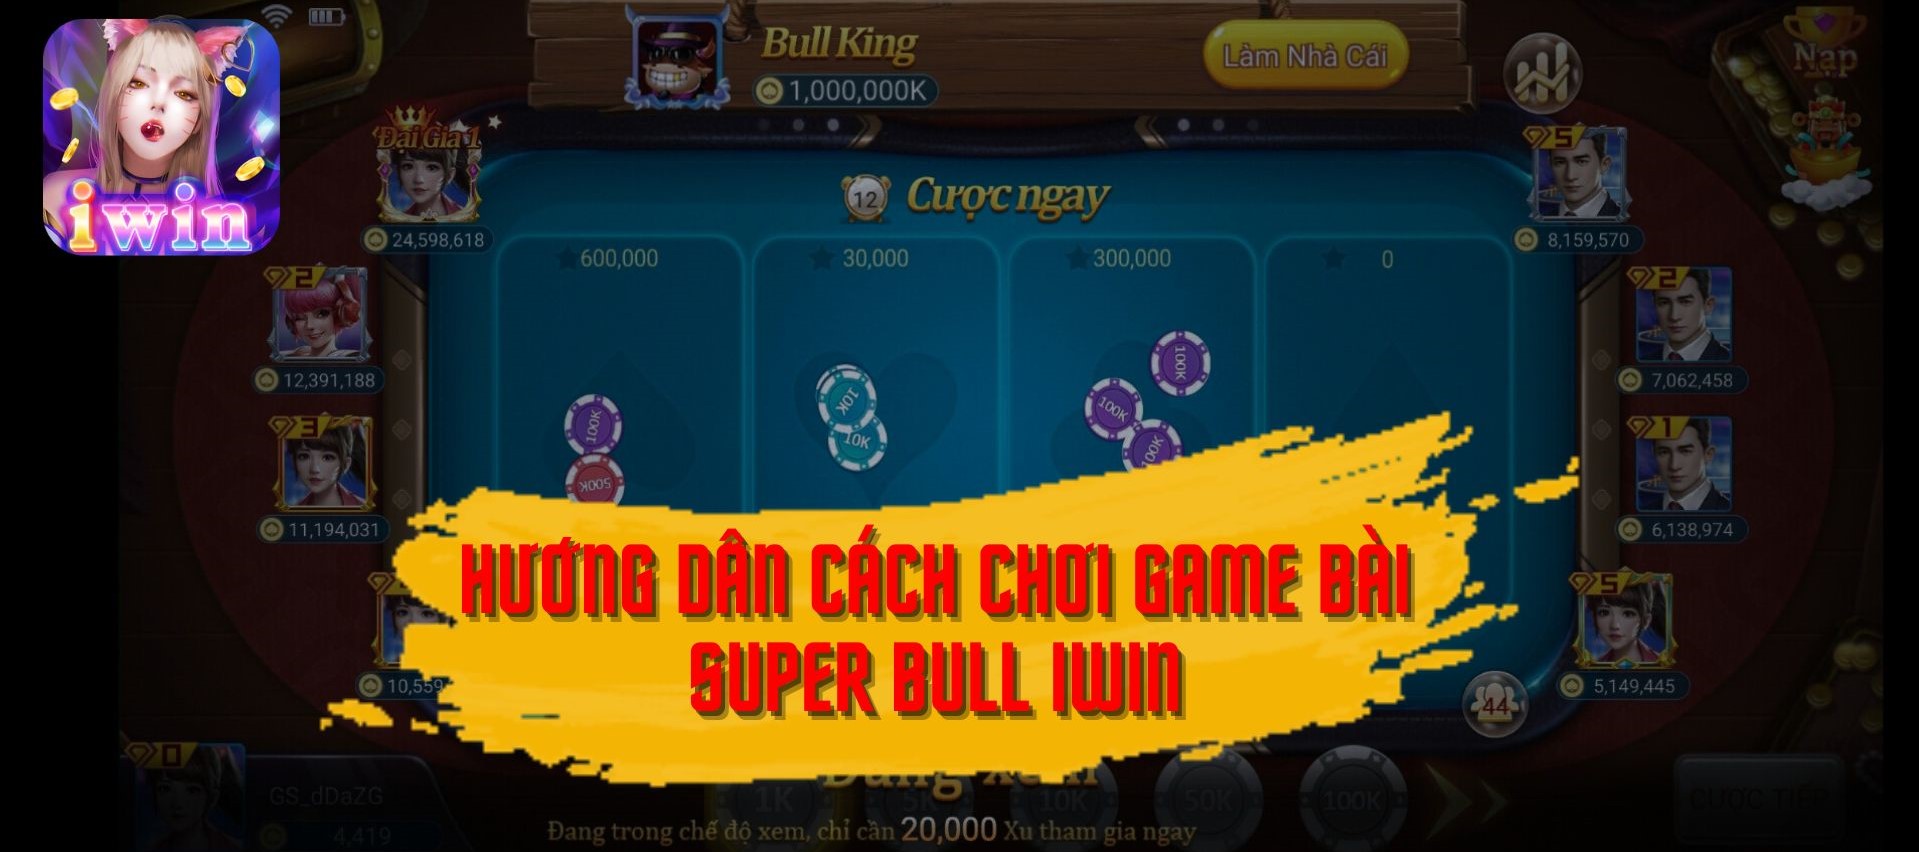 Chơi game bài Super Bull IWIN đổi thưởng